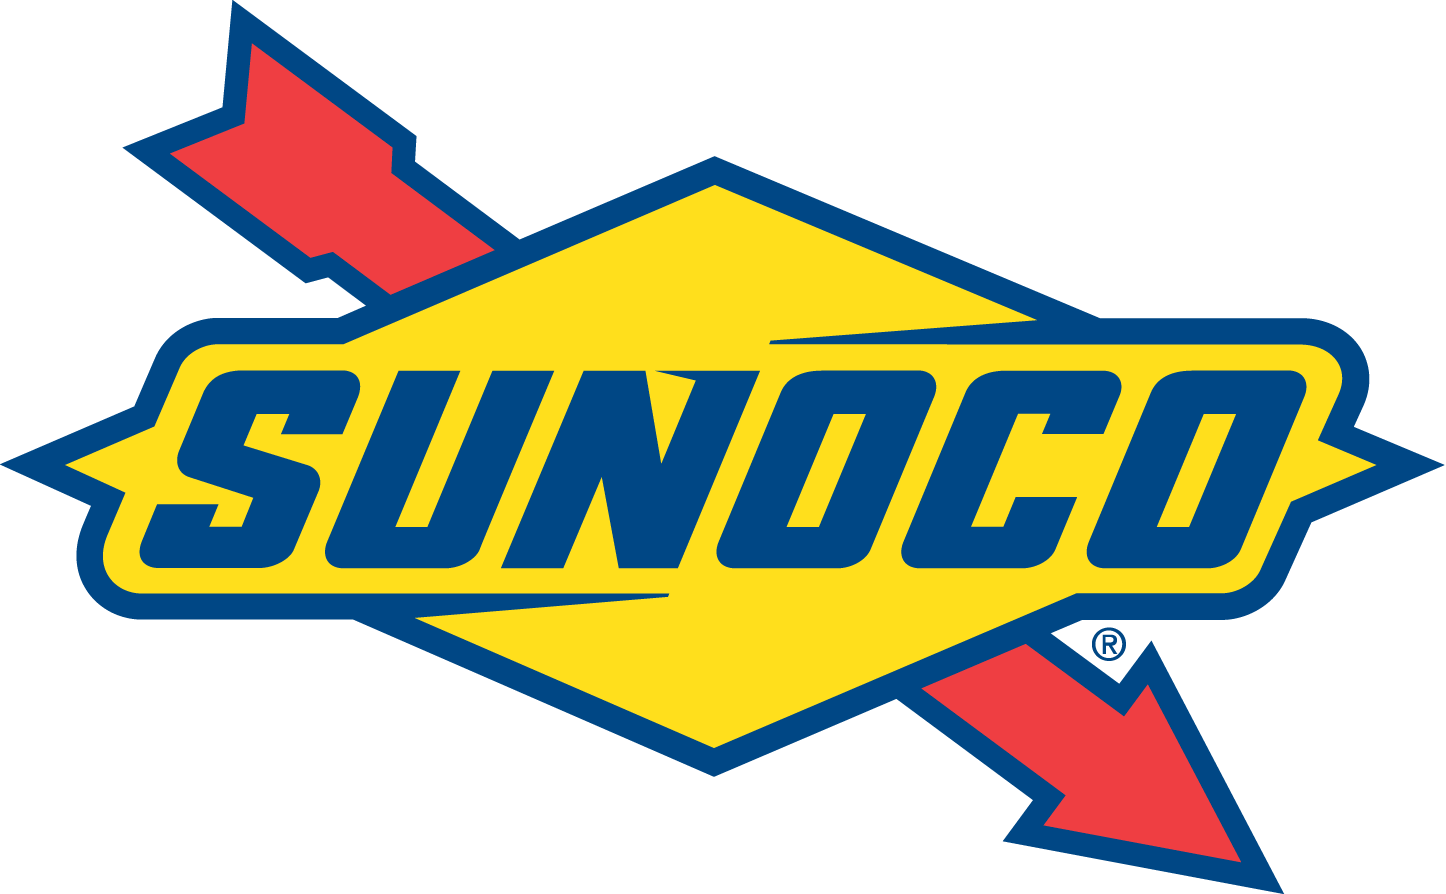 sunoco-logo